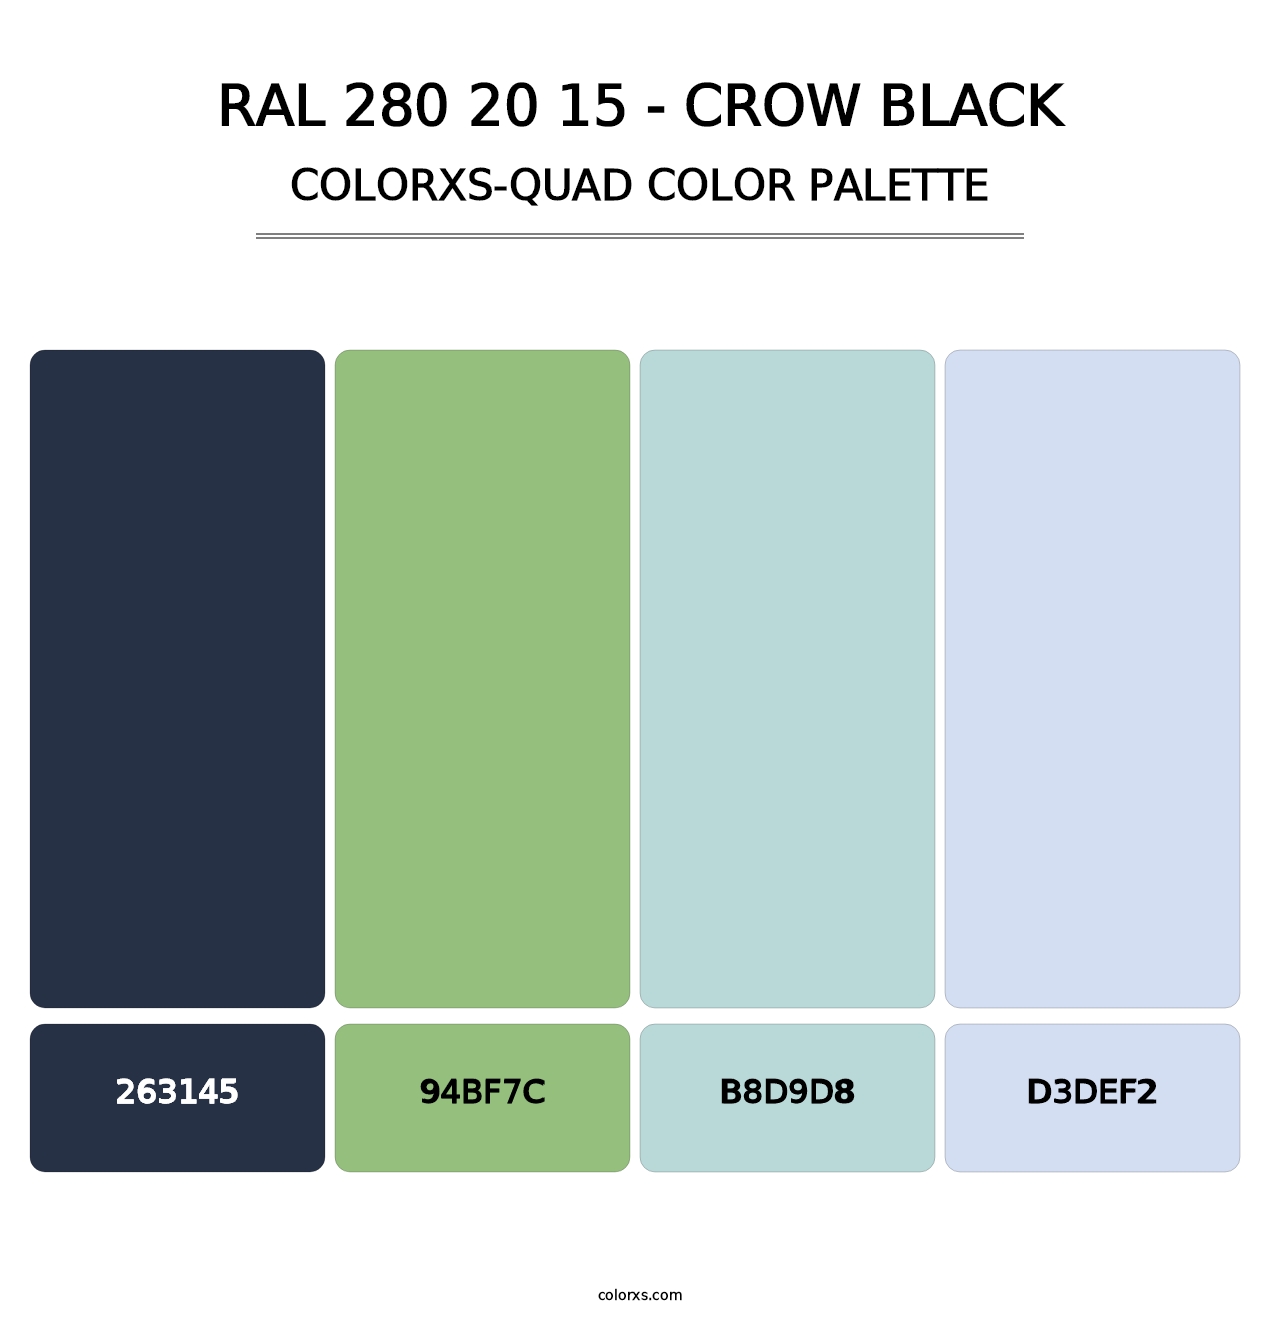 RAL 280 20 15 - Crow Black - Colorxs Quad Palette